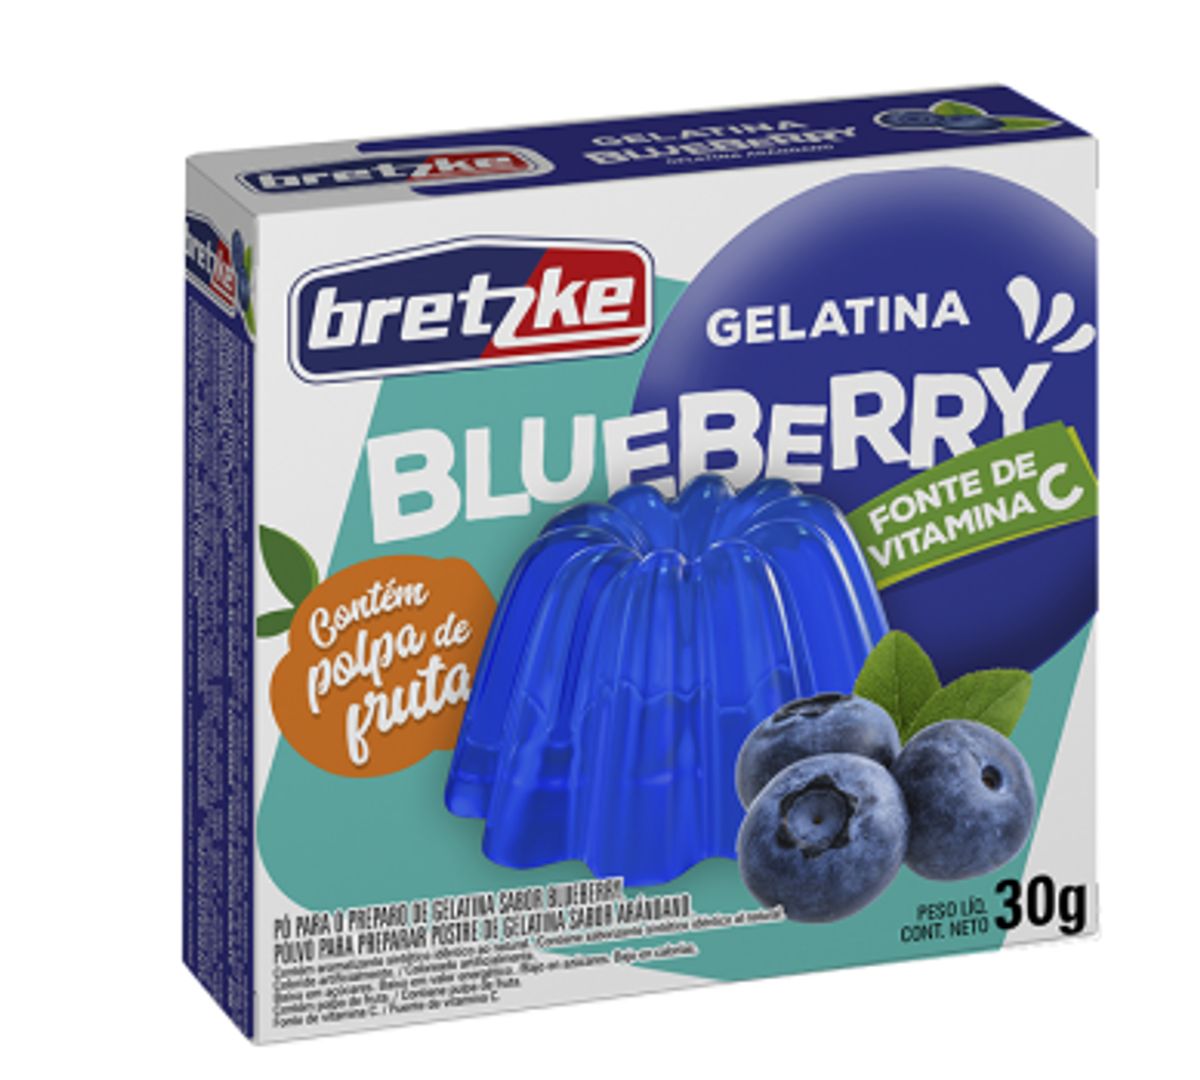 Gelatina Pó Blueberry Bretzke Caixa 30g